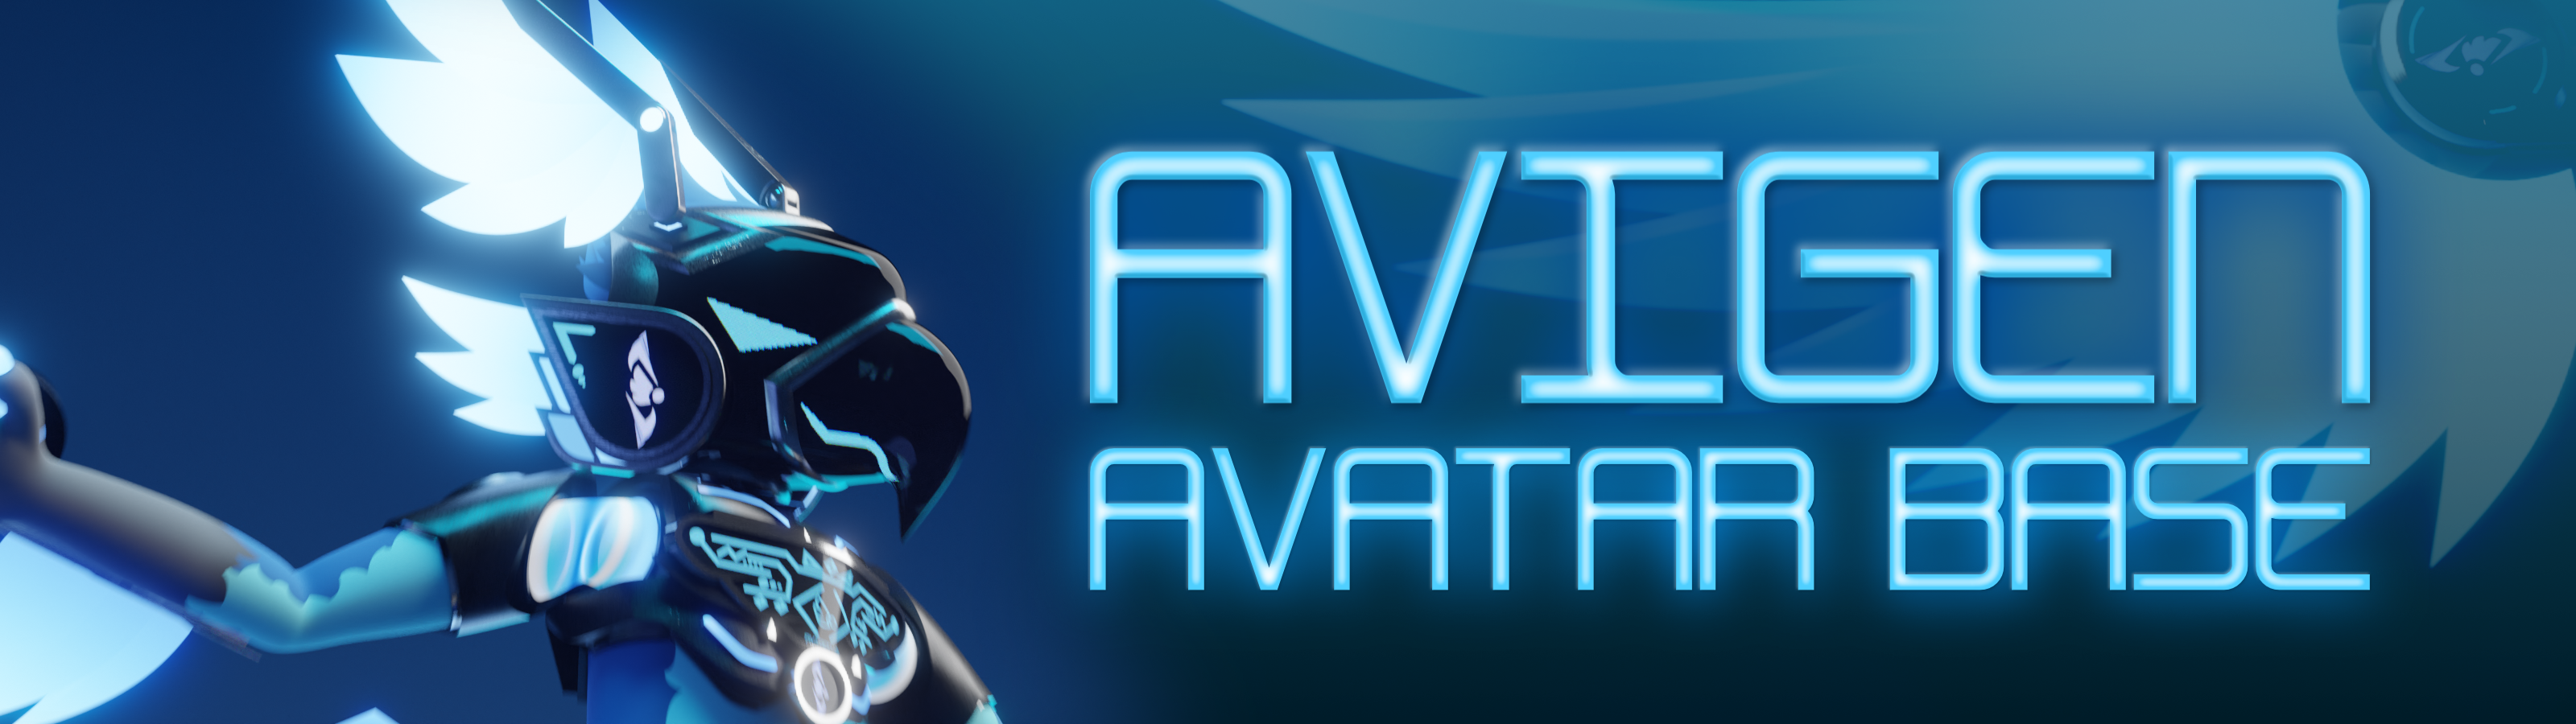 THE AVIGEN - Avatar Base